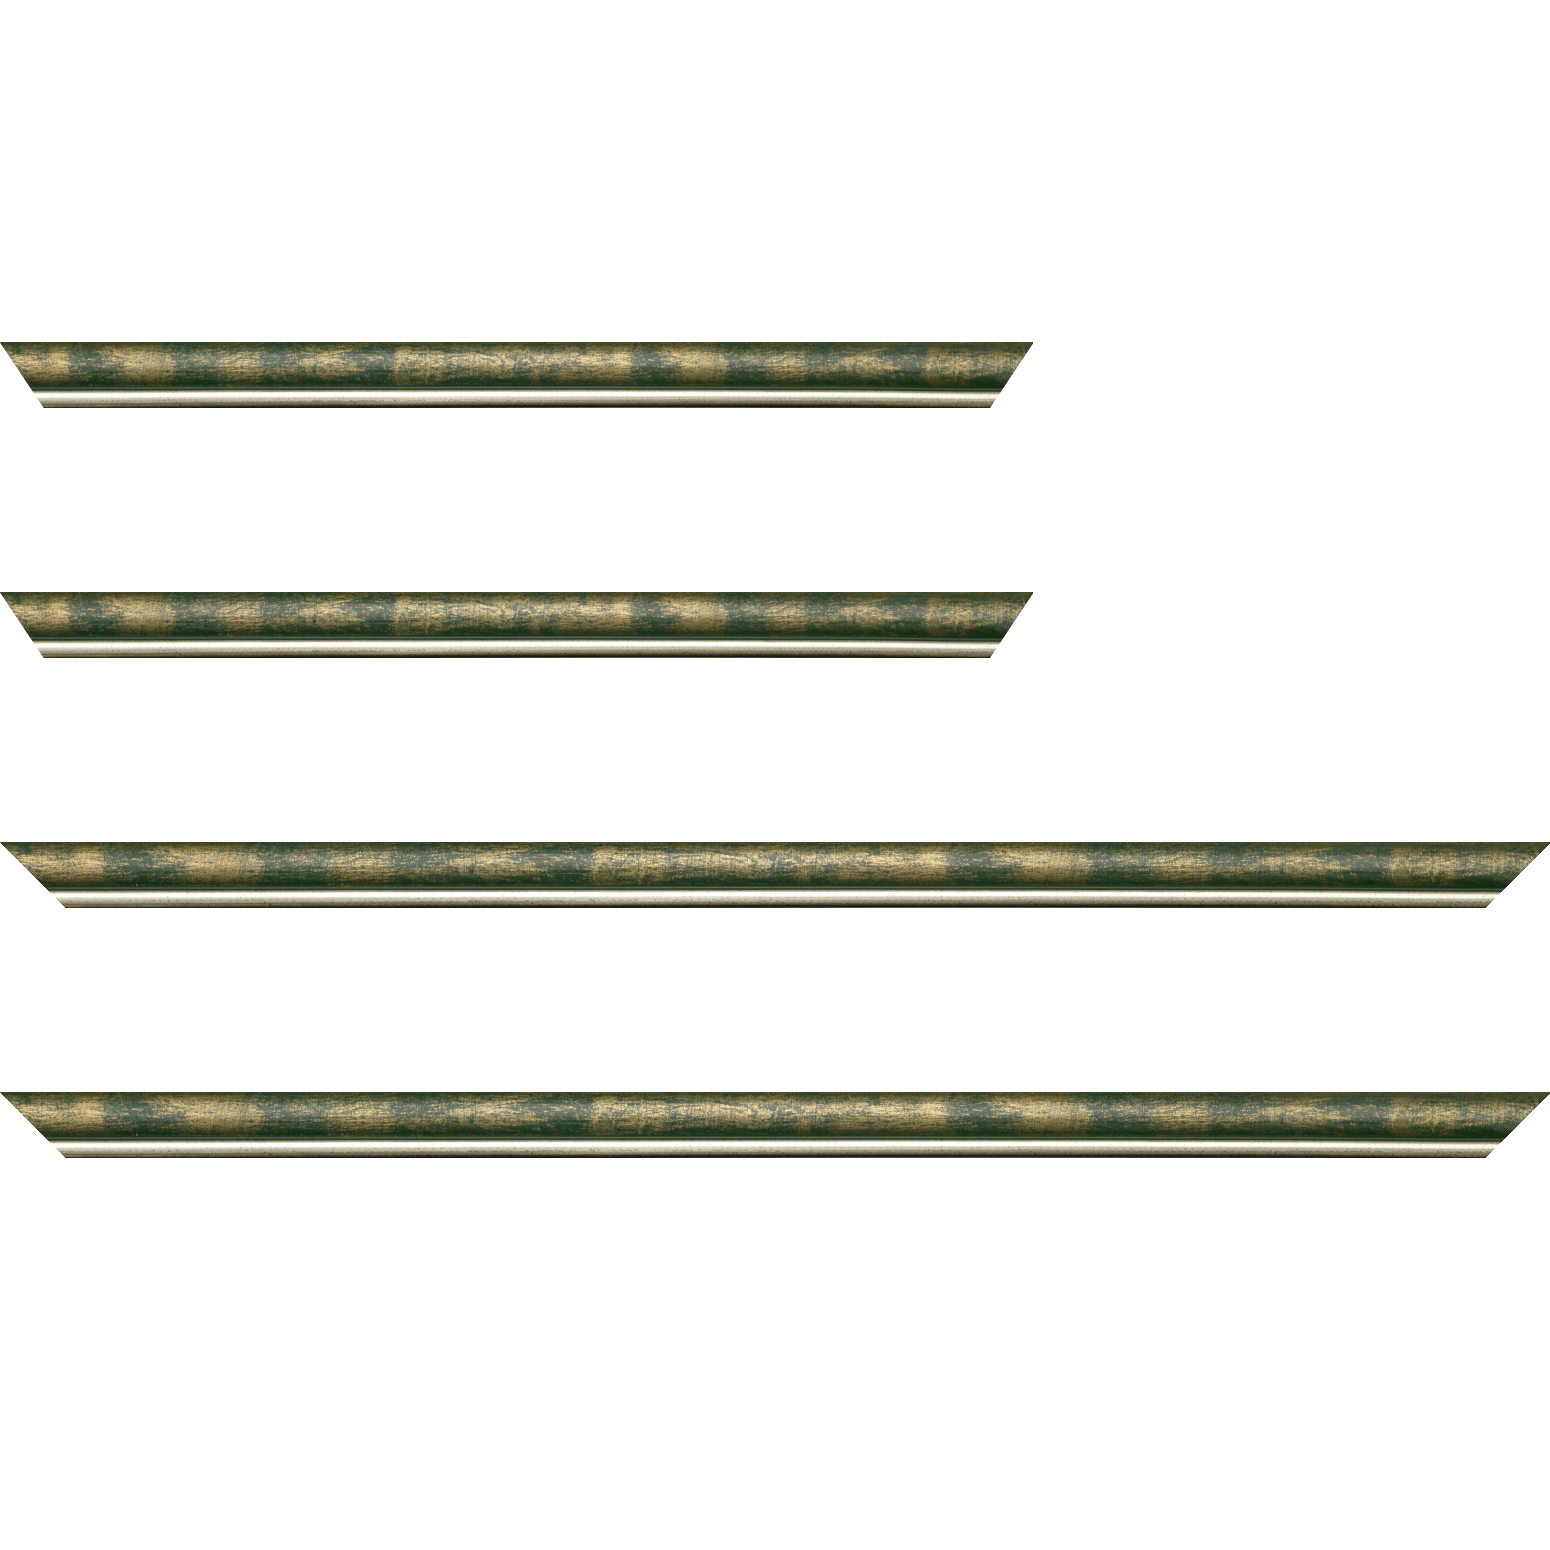 Baguette bois profil arrondi largeur 2.1cm  couleur vert fond or filet argent chaud - 35x24